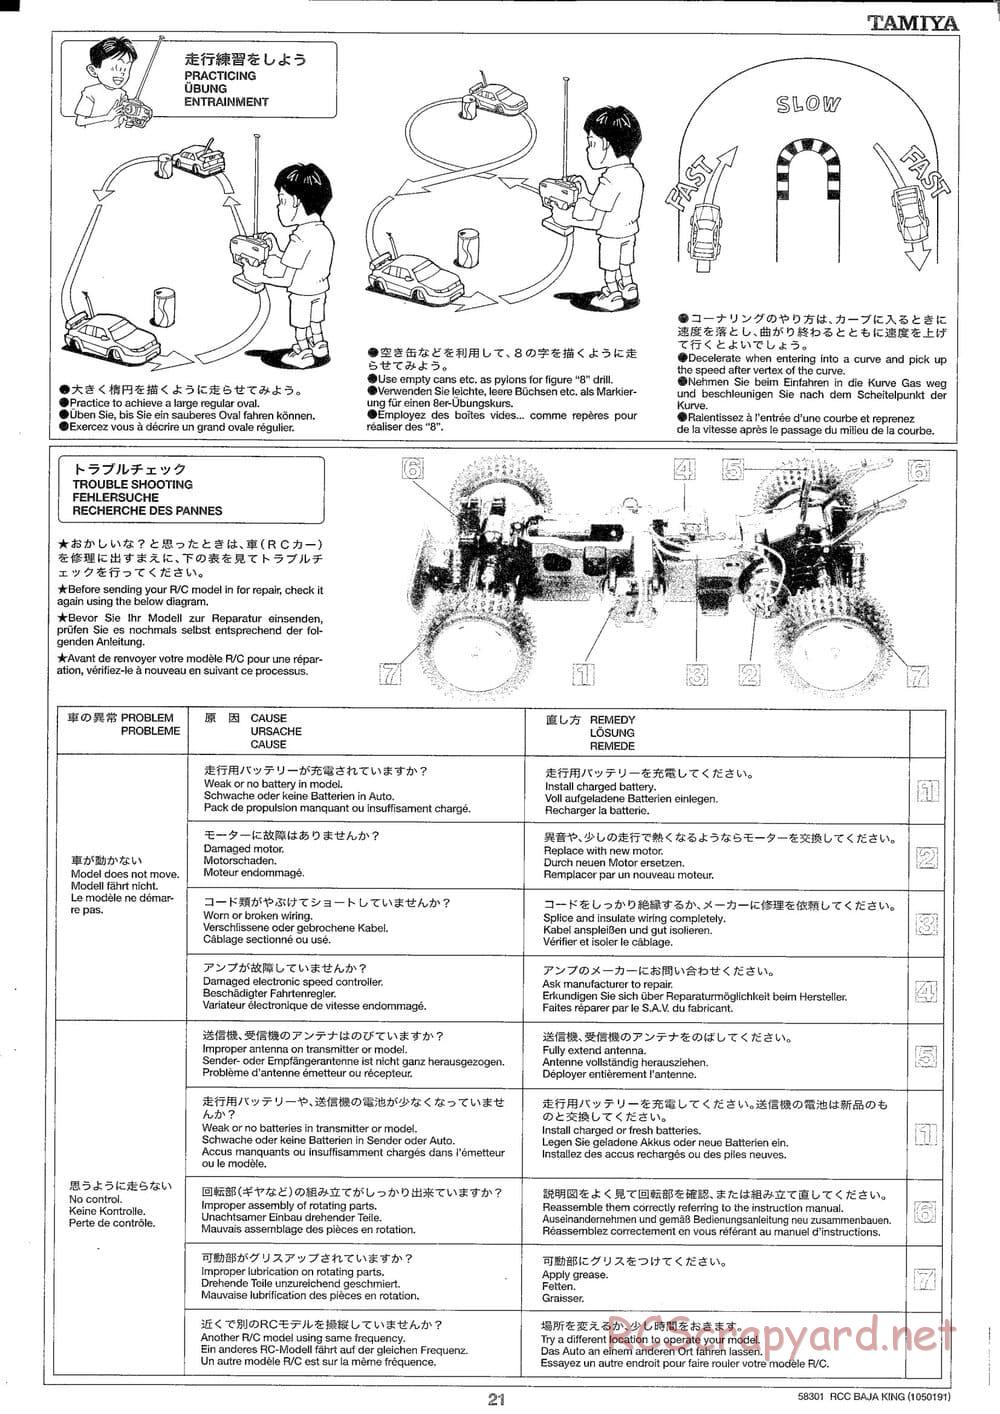 Tamiya - Baja King - TL-01B Chassis - Manual - Page 21